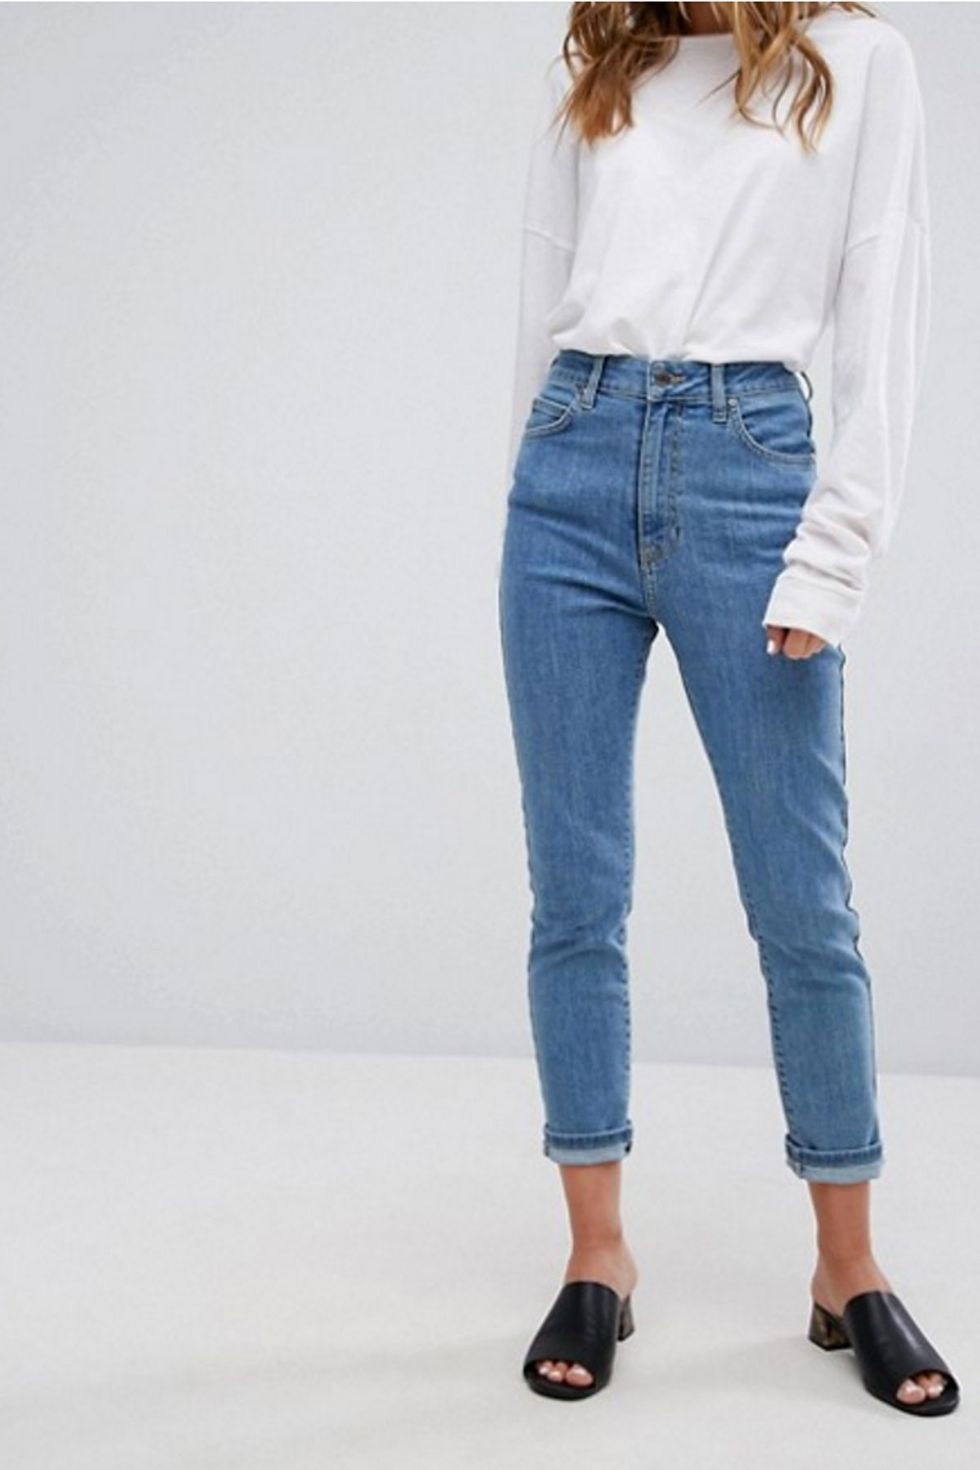 Mom jeans - Trousers - Women